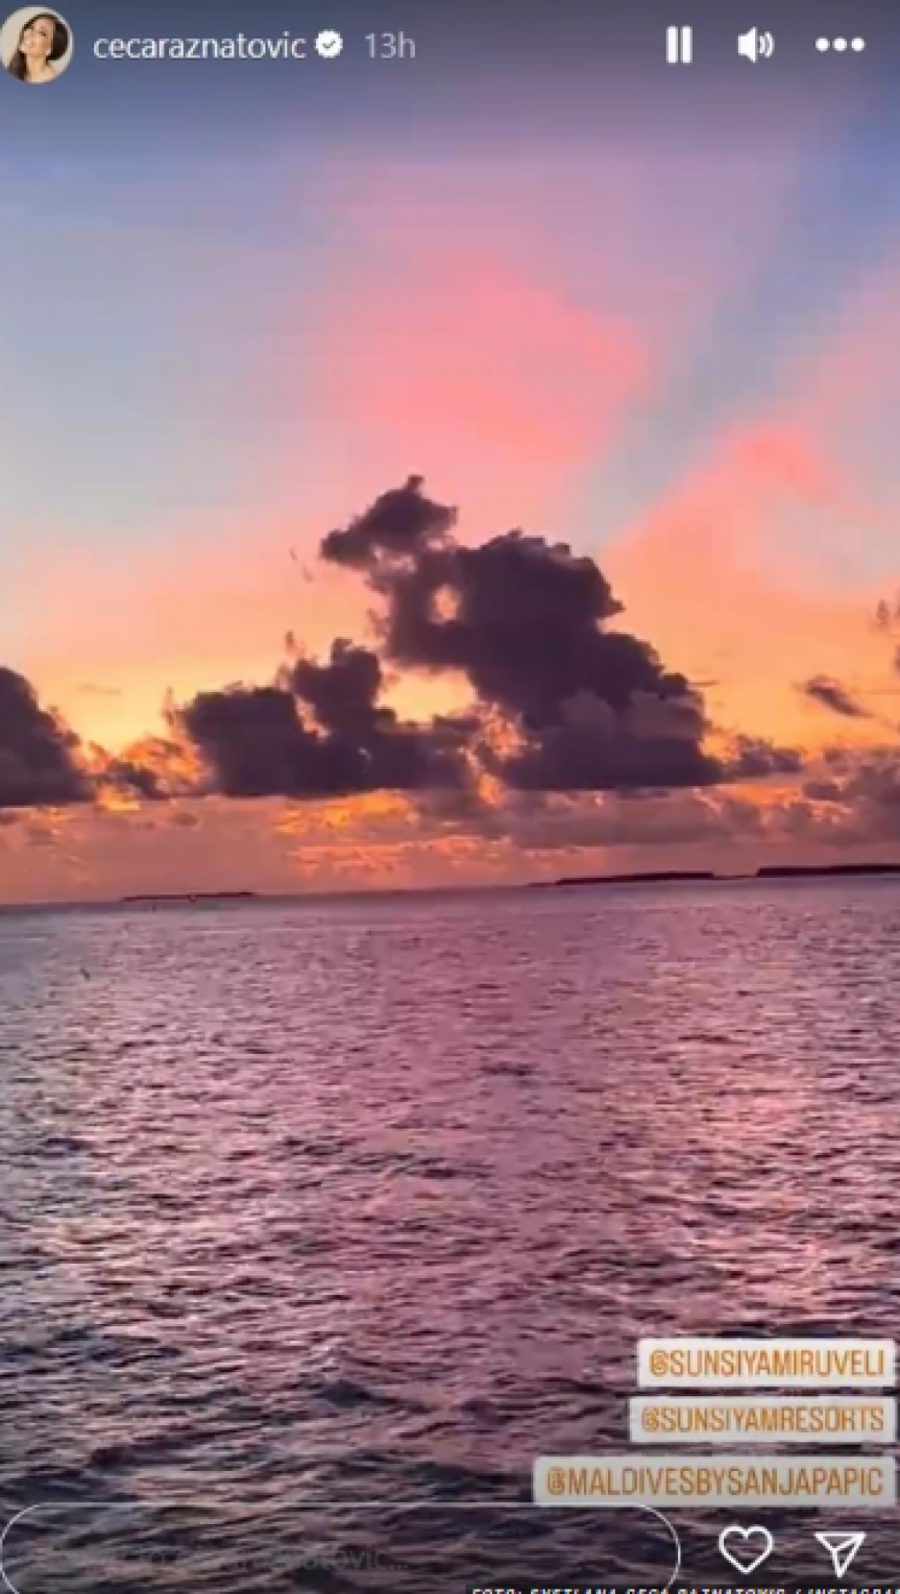 SVE IZGLEDA ČAROBNO Ceca uživa na Maldivima, a ovi prizori izgledaju nestvarno (FOTO/VIDEO)